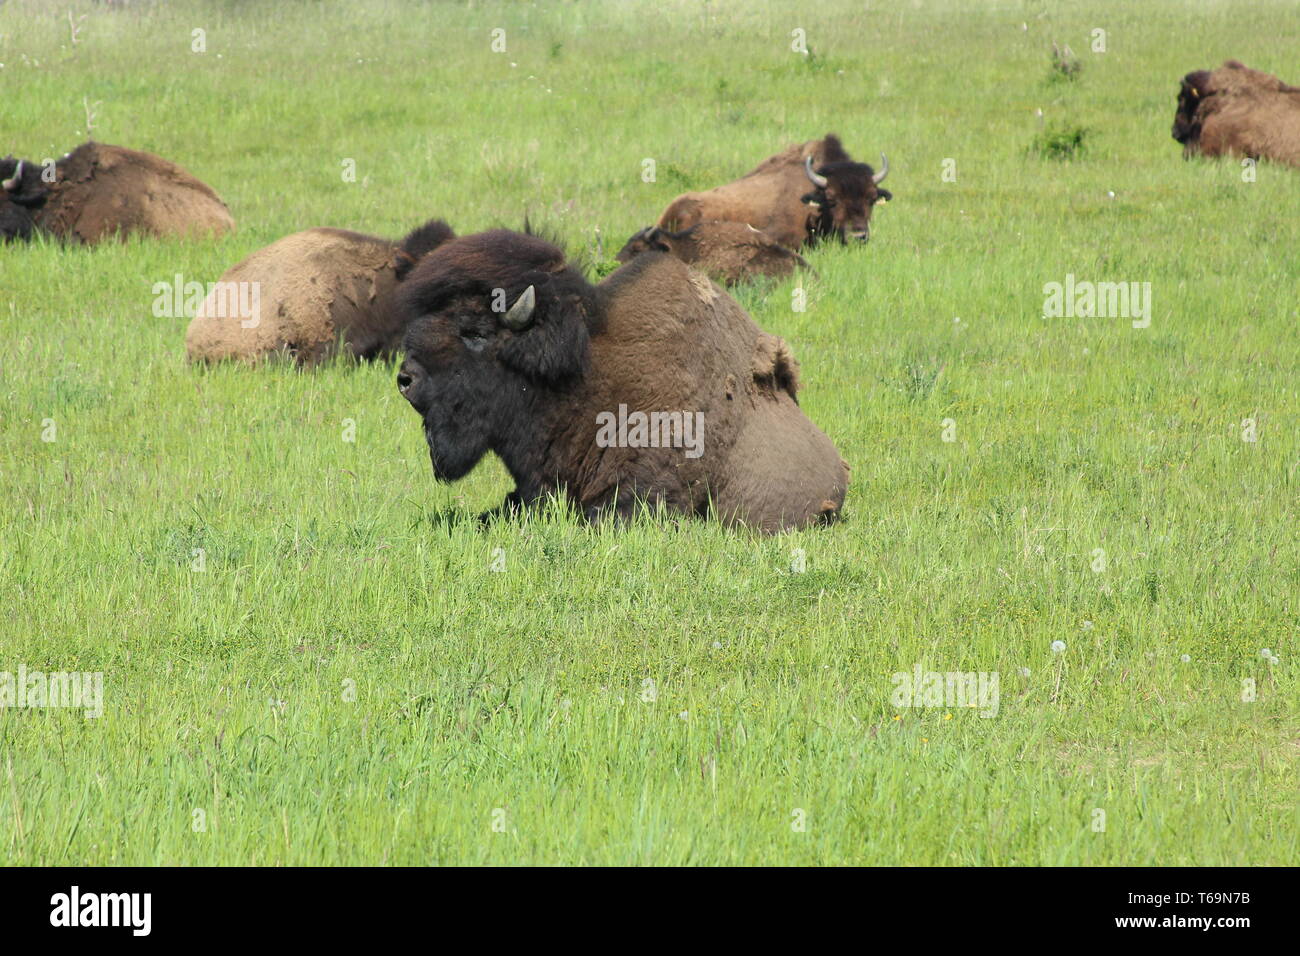 Bisonherd on meadow Stock Photo